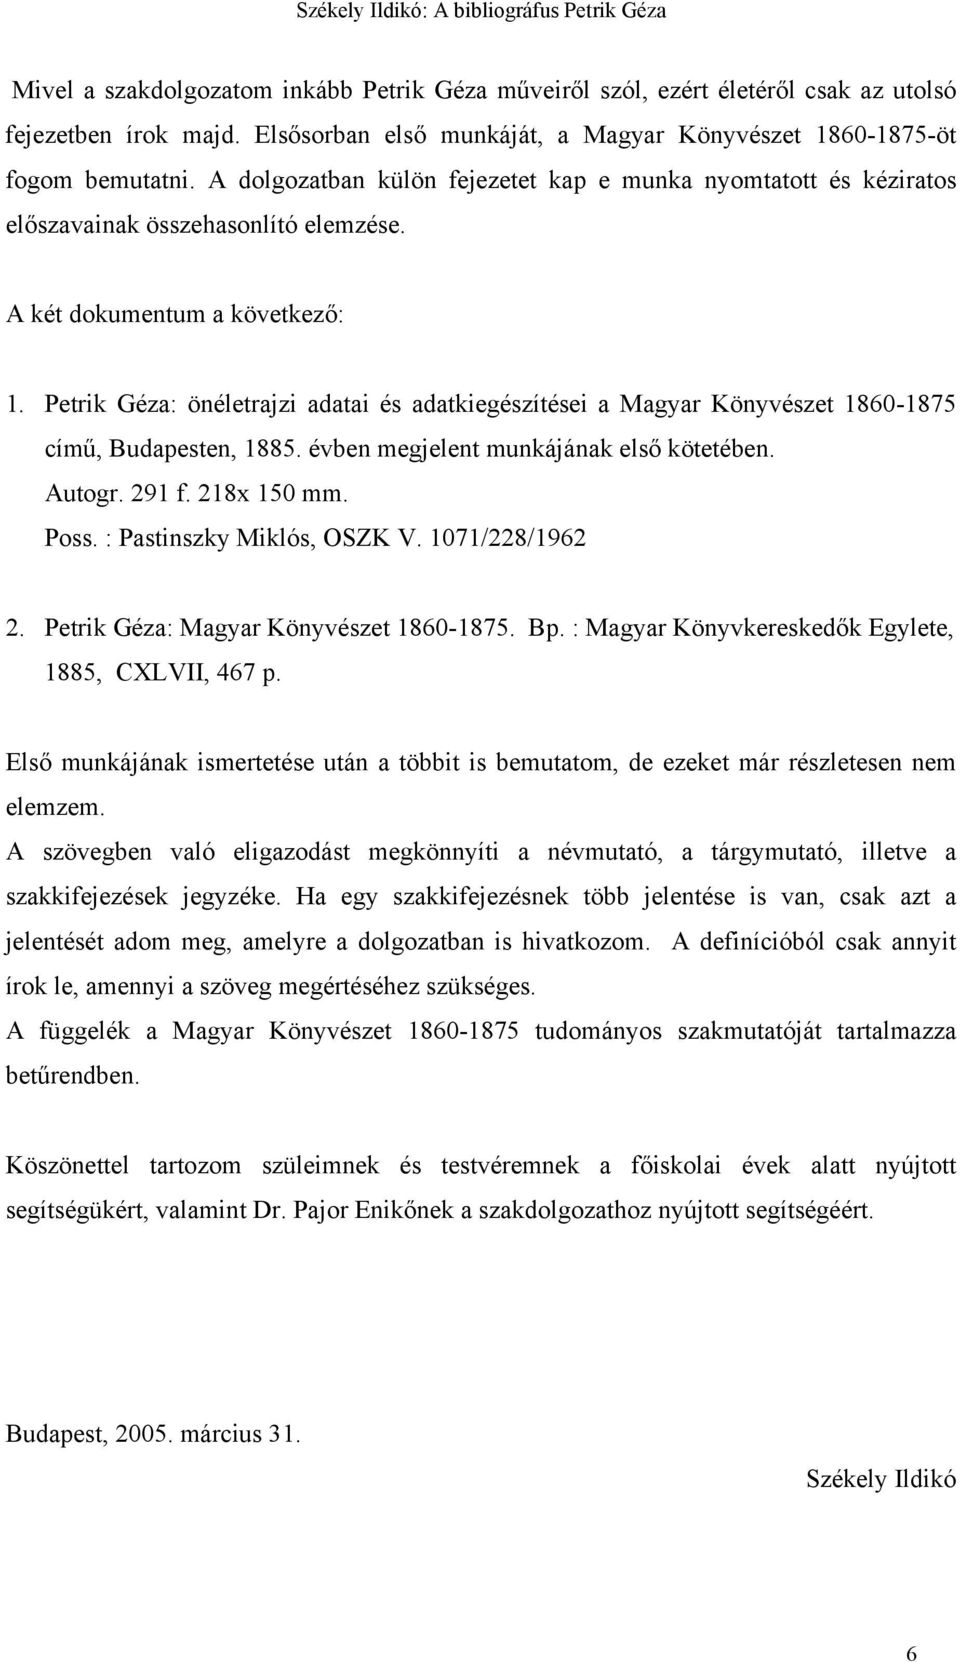 Petrik Géza: önéletrajzi adatai és adatkiegészítései a Magyar Könyvészet 1860-1875 című, Budapesten, 1885. évben megjelent munkájának első kötetében. Autogr. 291 f. 218x 150 mm. Poss.